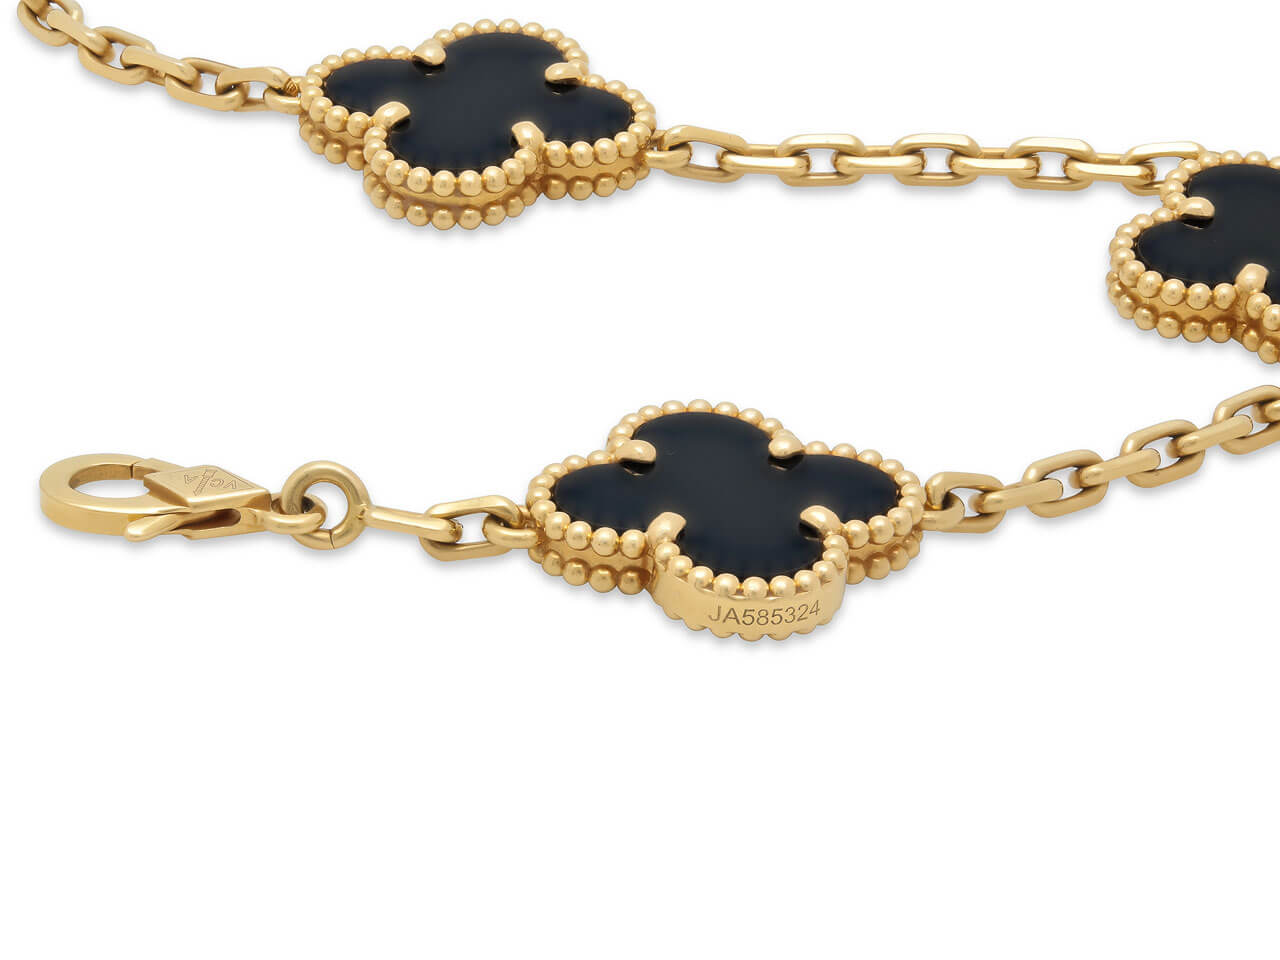 Van Cleef & Arpels 'Vintage Alhambra' 5 Motif Onyx Bracelet in 18K Gold